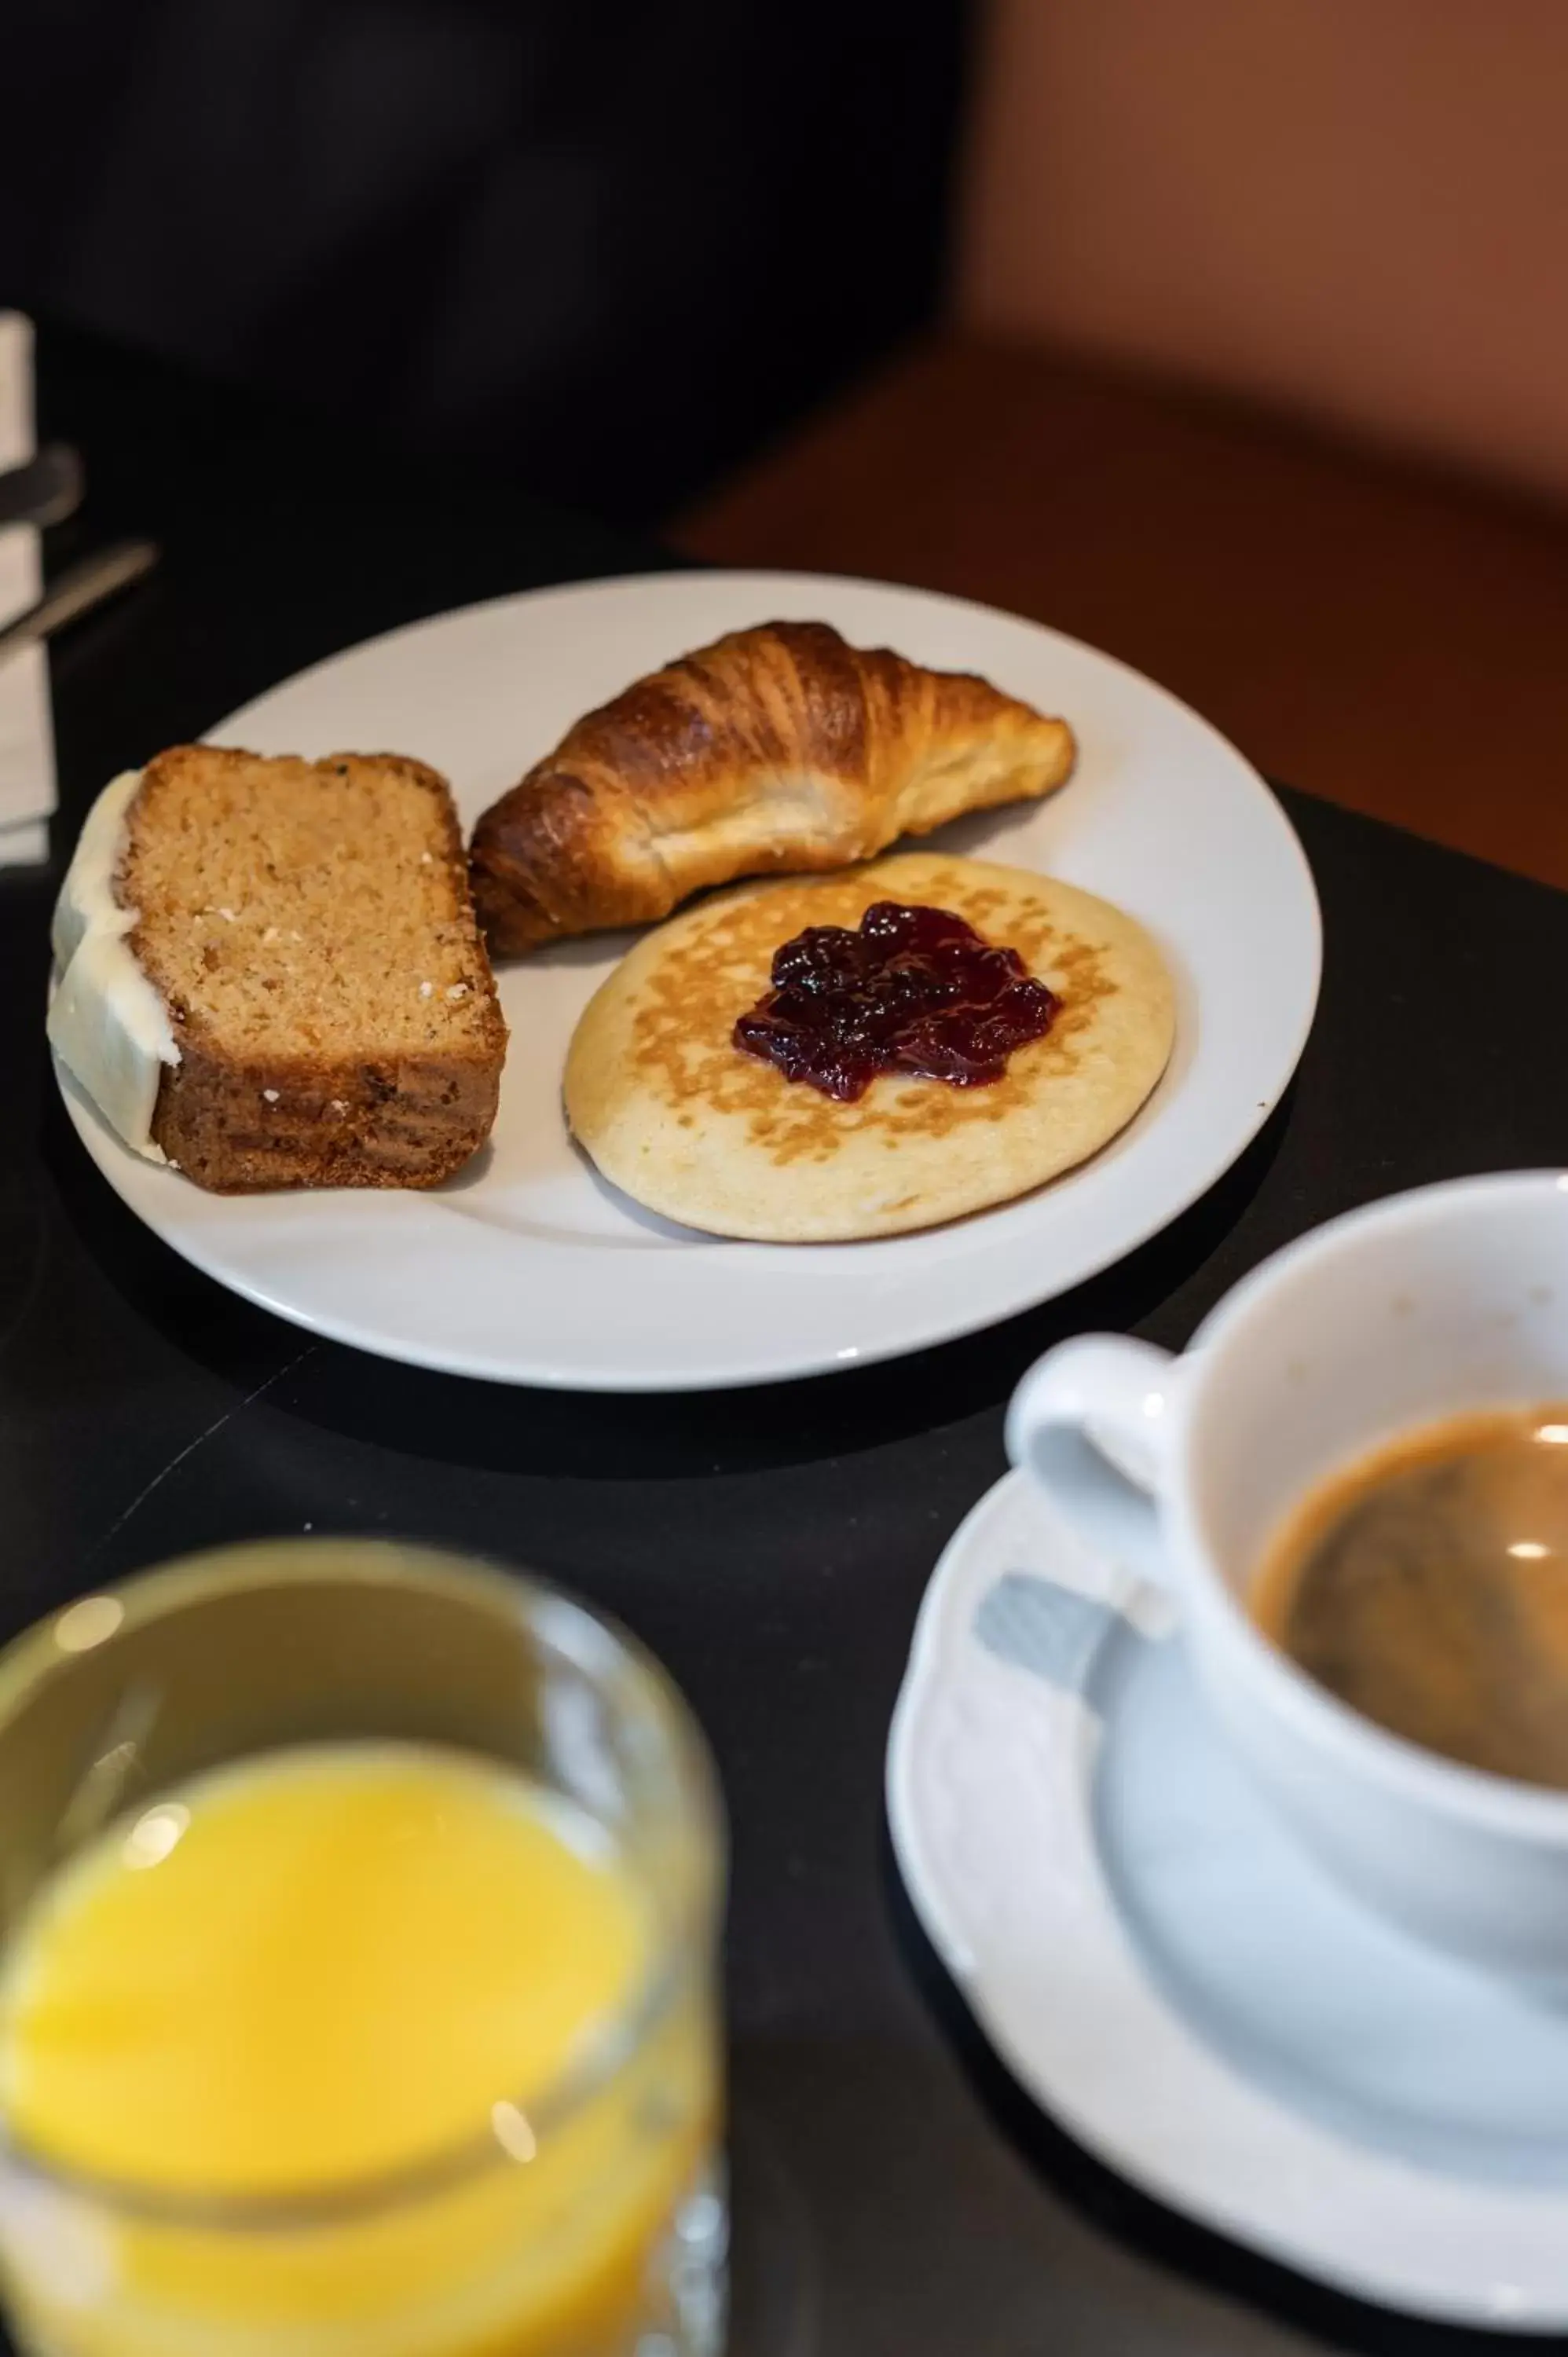 Breakfast in Royal Saint Germain